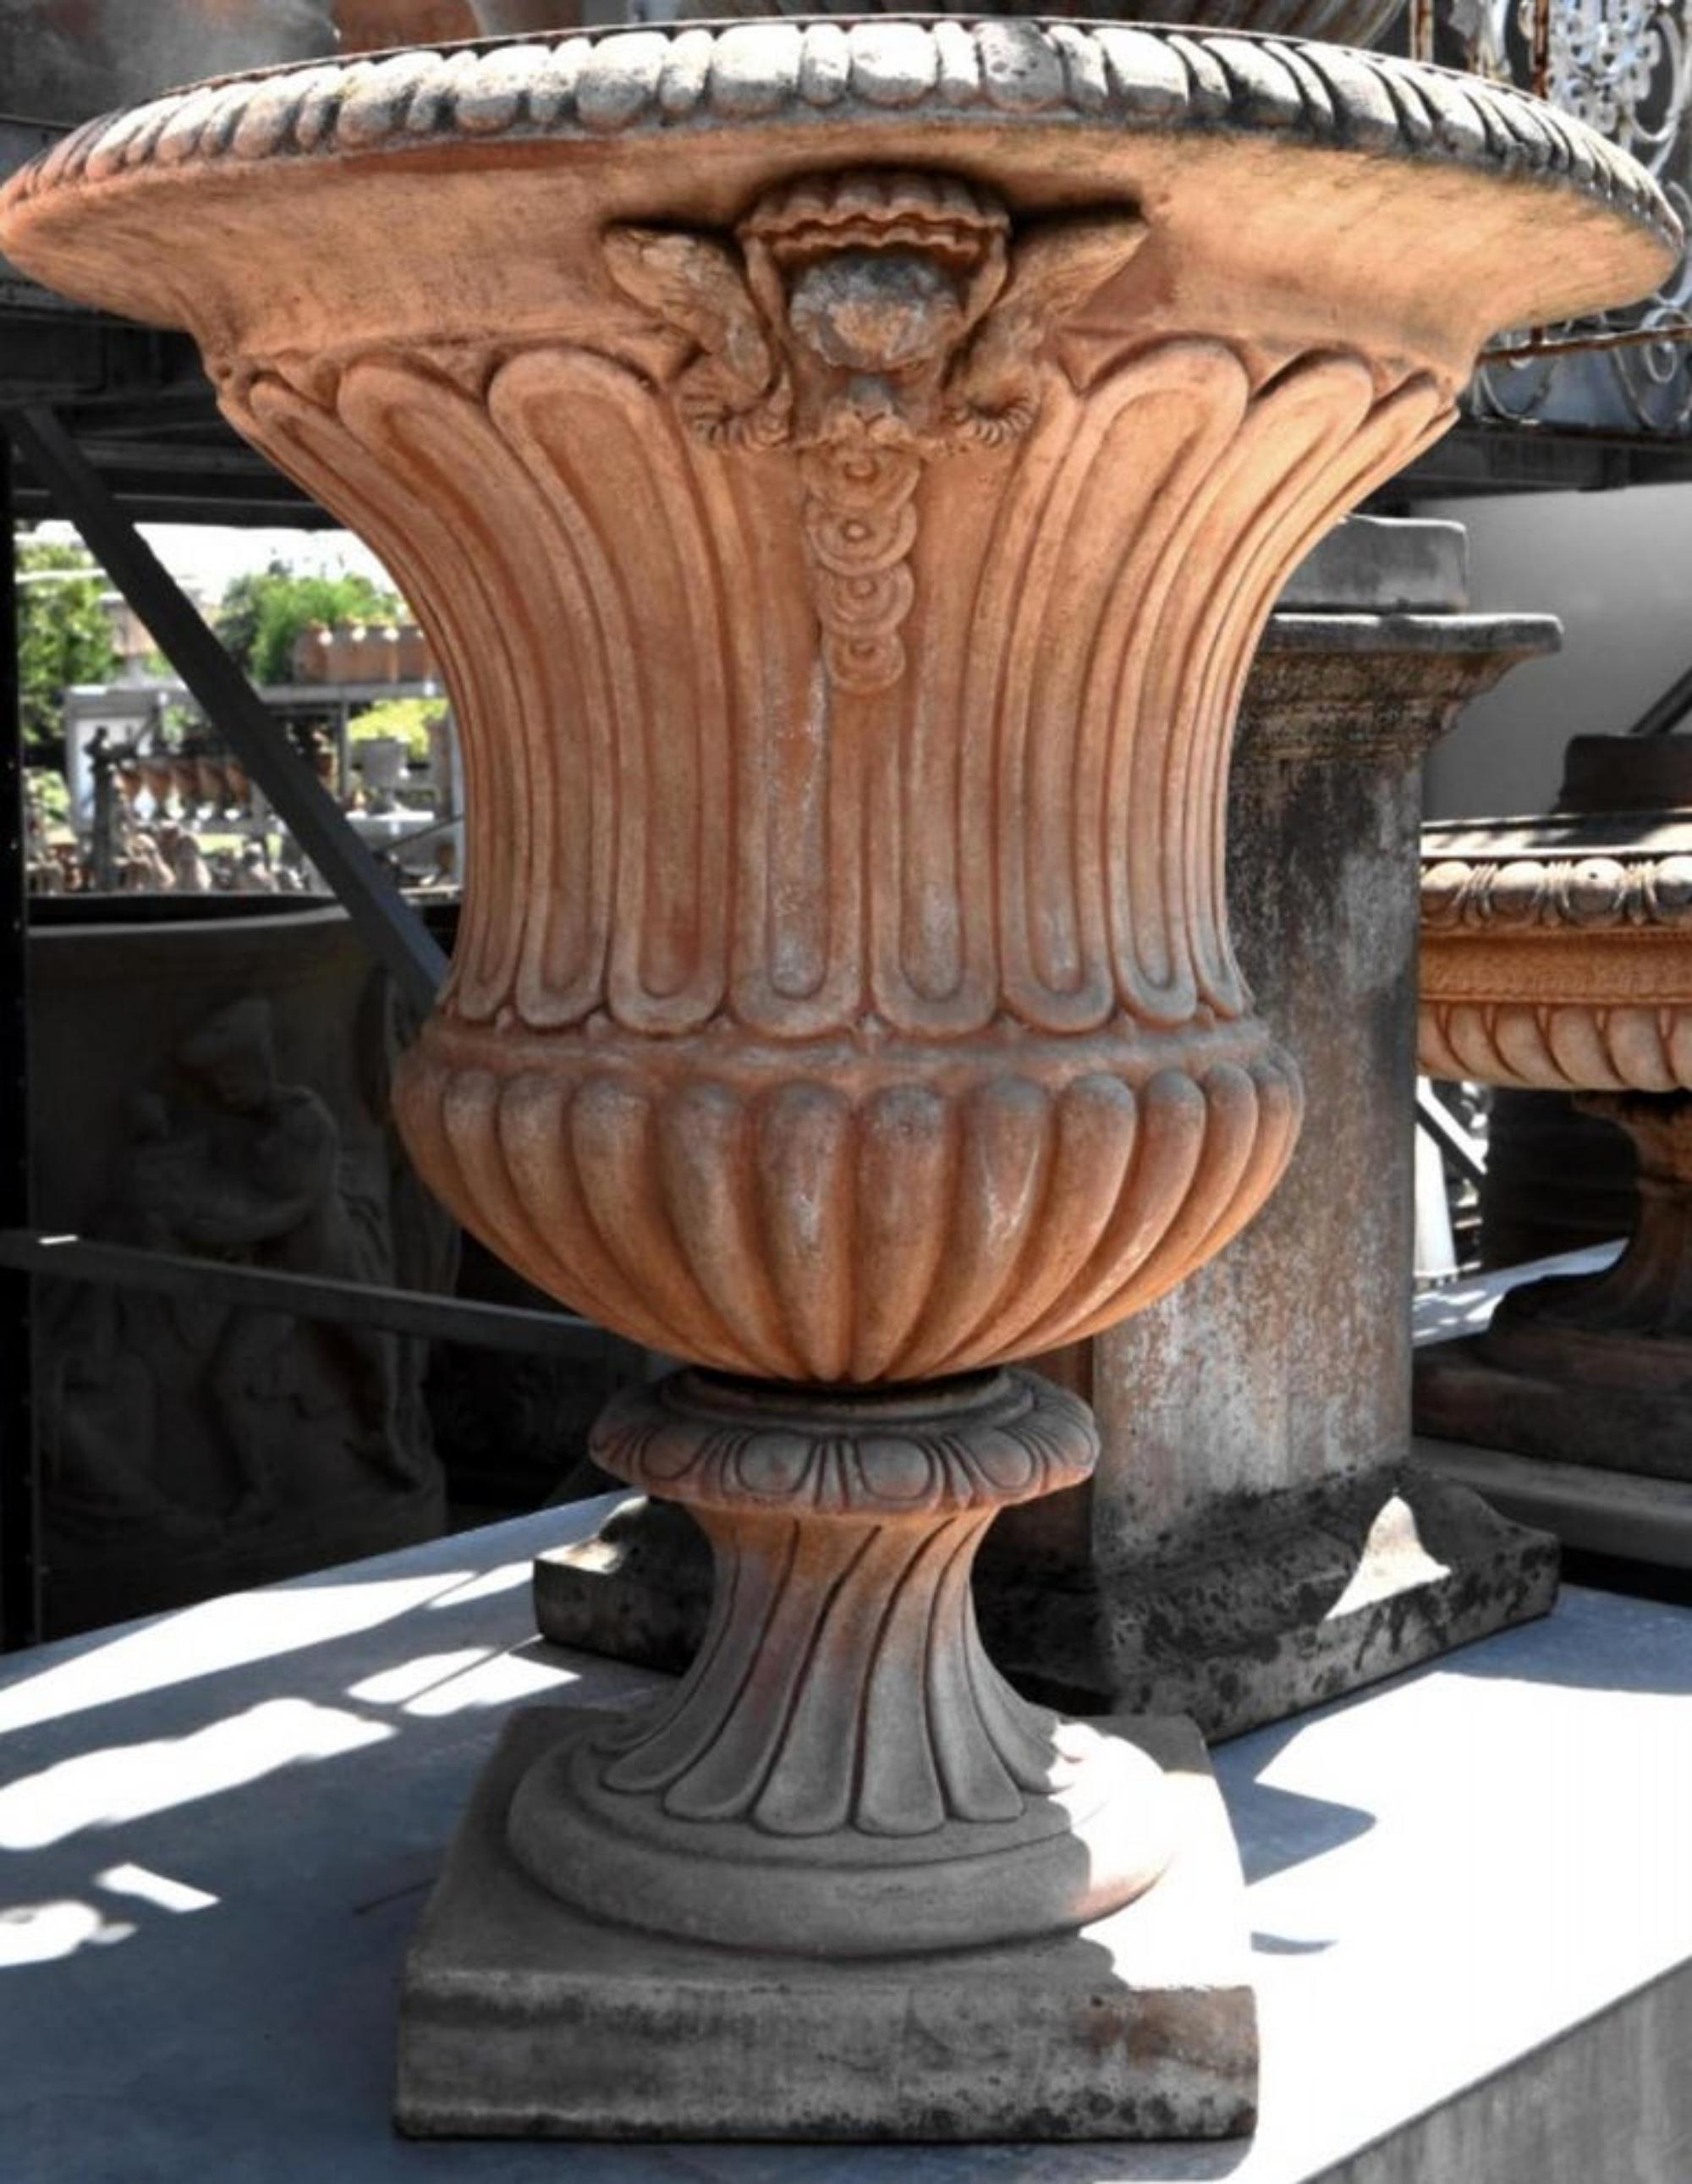 Große Mediceo-Vase Baccellato-Terrakotta-Kelch, frühes 20. Jahrhundert
Maße: Höhe 80 cm
Durchmesser 72 cm
Gewicht 30 kg
MATERIAL Terrakotta.